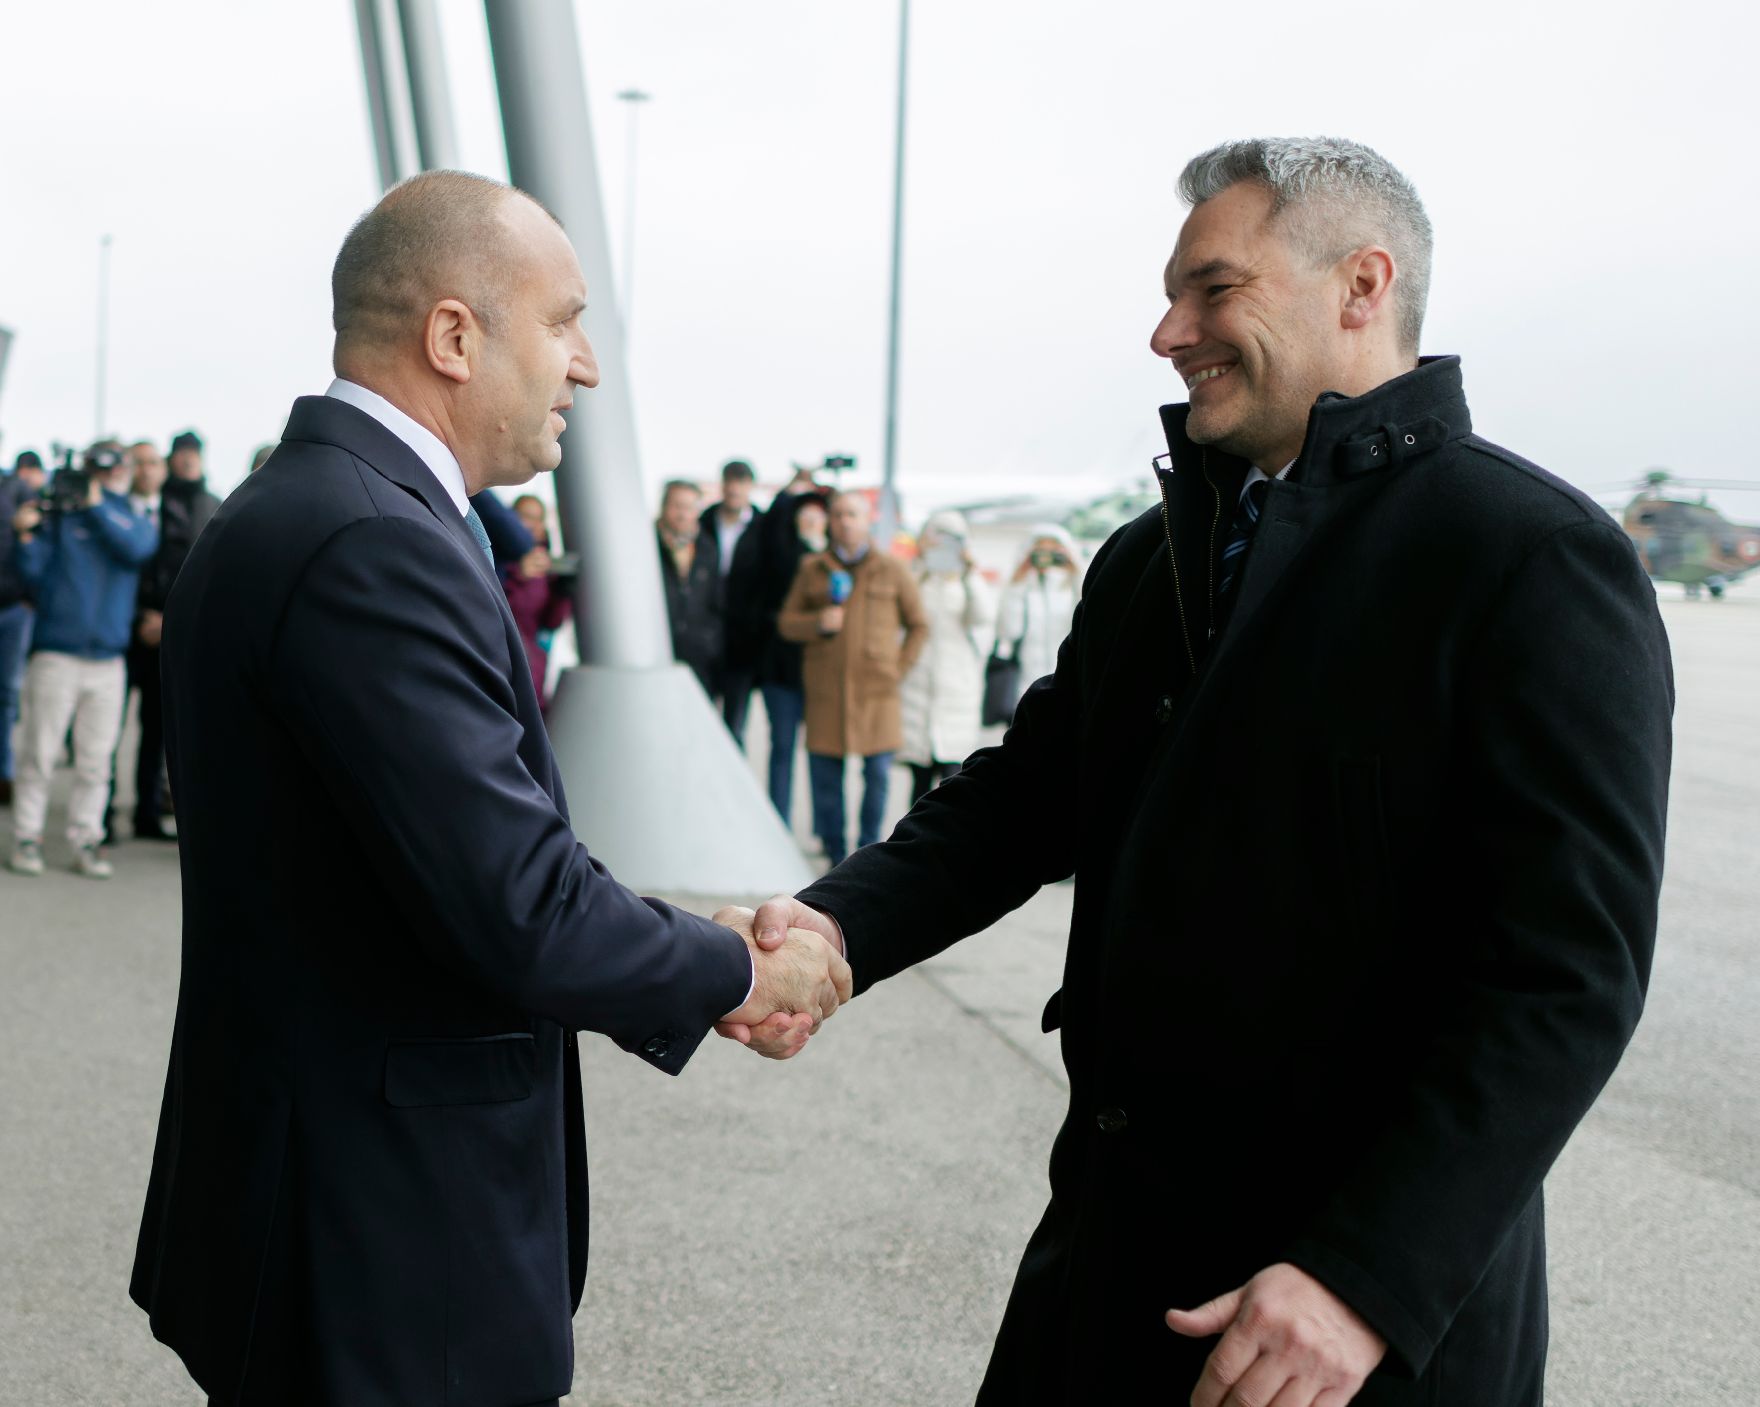 Am 23. Jänner 2023 reiste Bundeskanzler Karl Nehammer (r.) gemeinsam mit Innenminister Gerhard Karner zu einem Arbeitsbesuch nach Bulgarien. Im Bild mit dem bulgarischen Präsidenten Rumen Radew (l.).